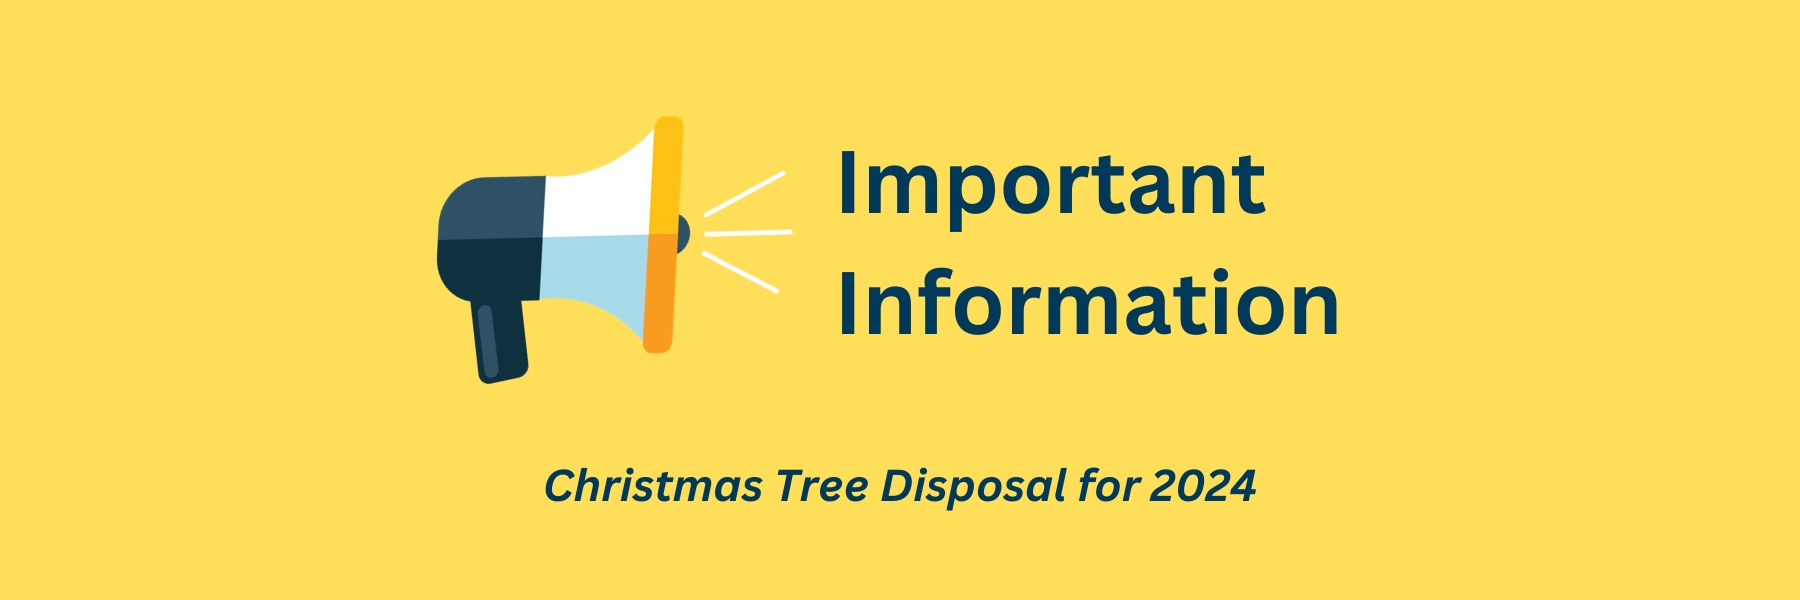 Christmas Tree Disposal for 2024